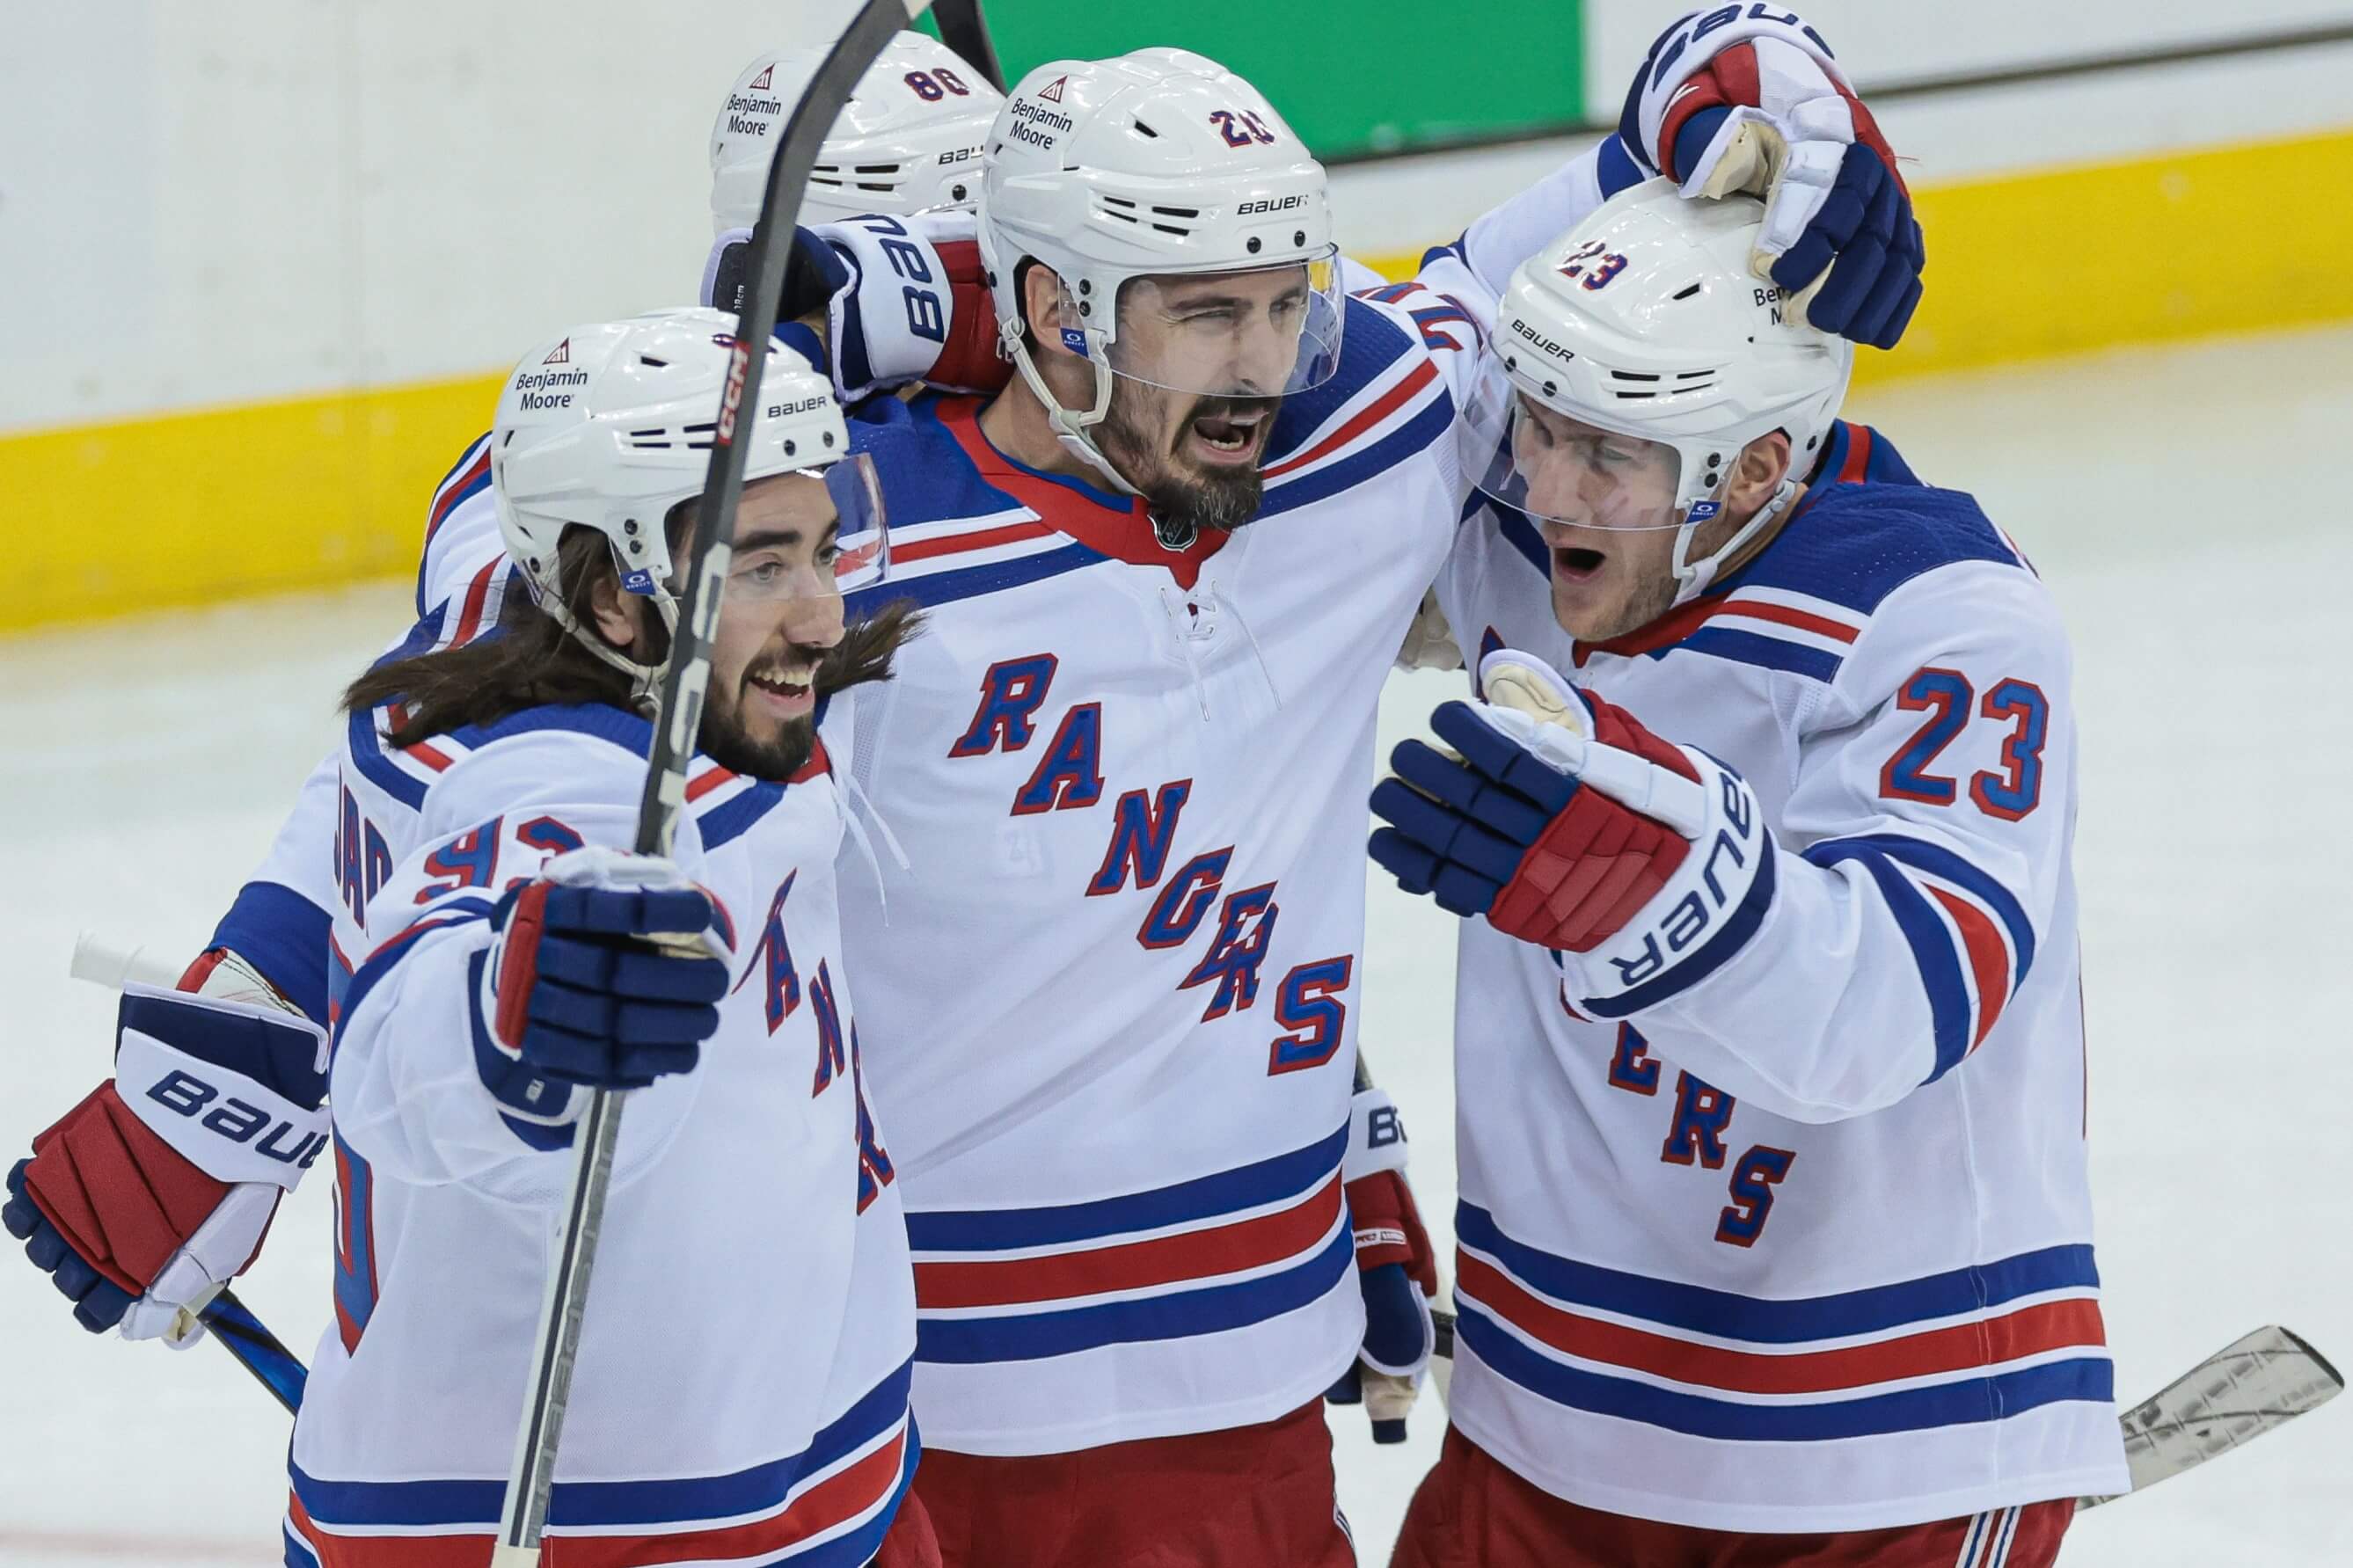 Devils vs. Rangers odds, prediction: Will goaltenders shine again